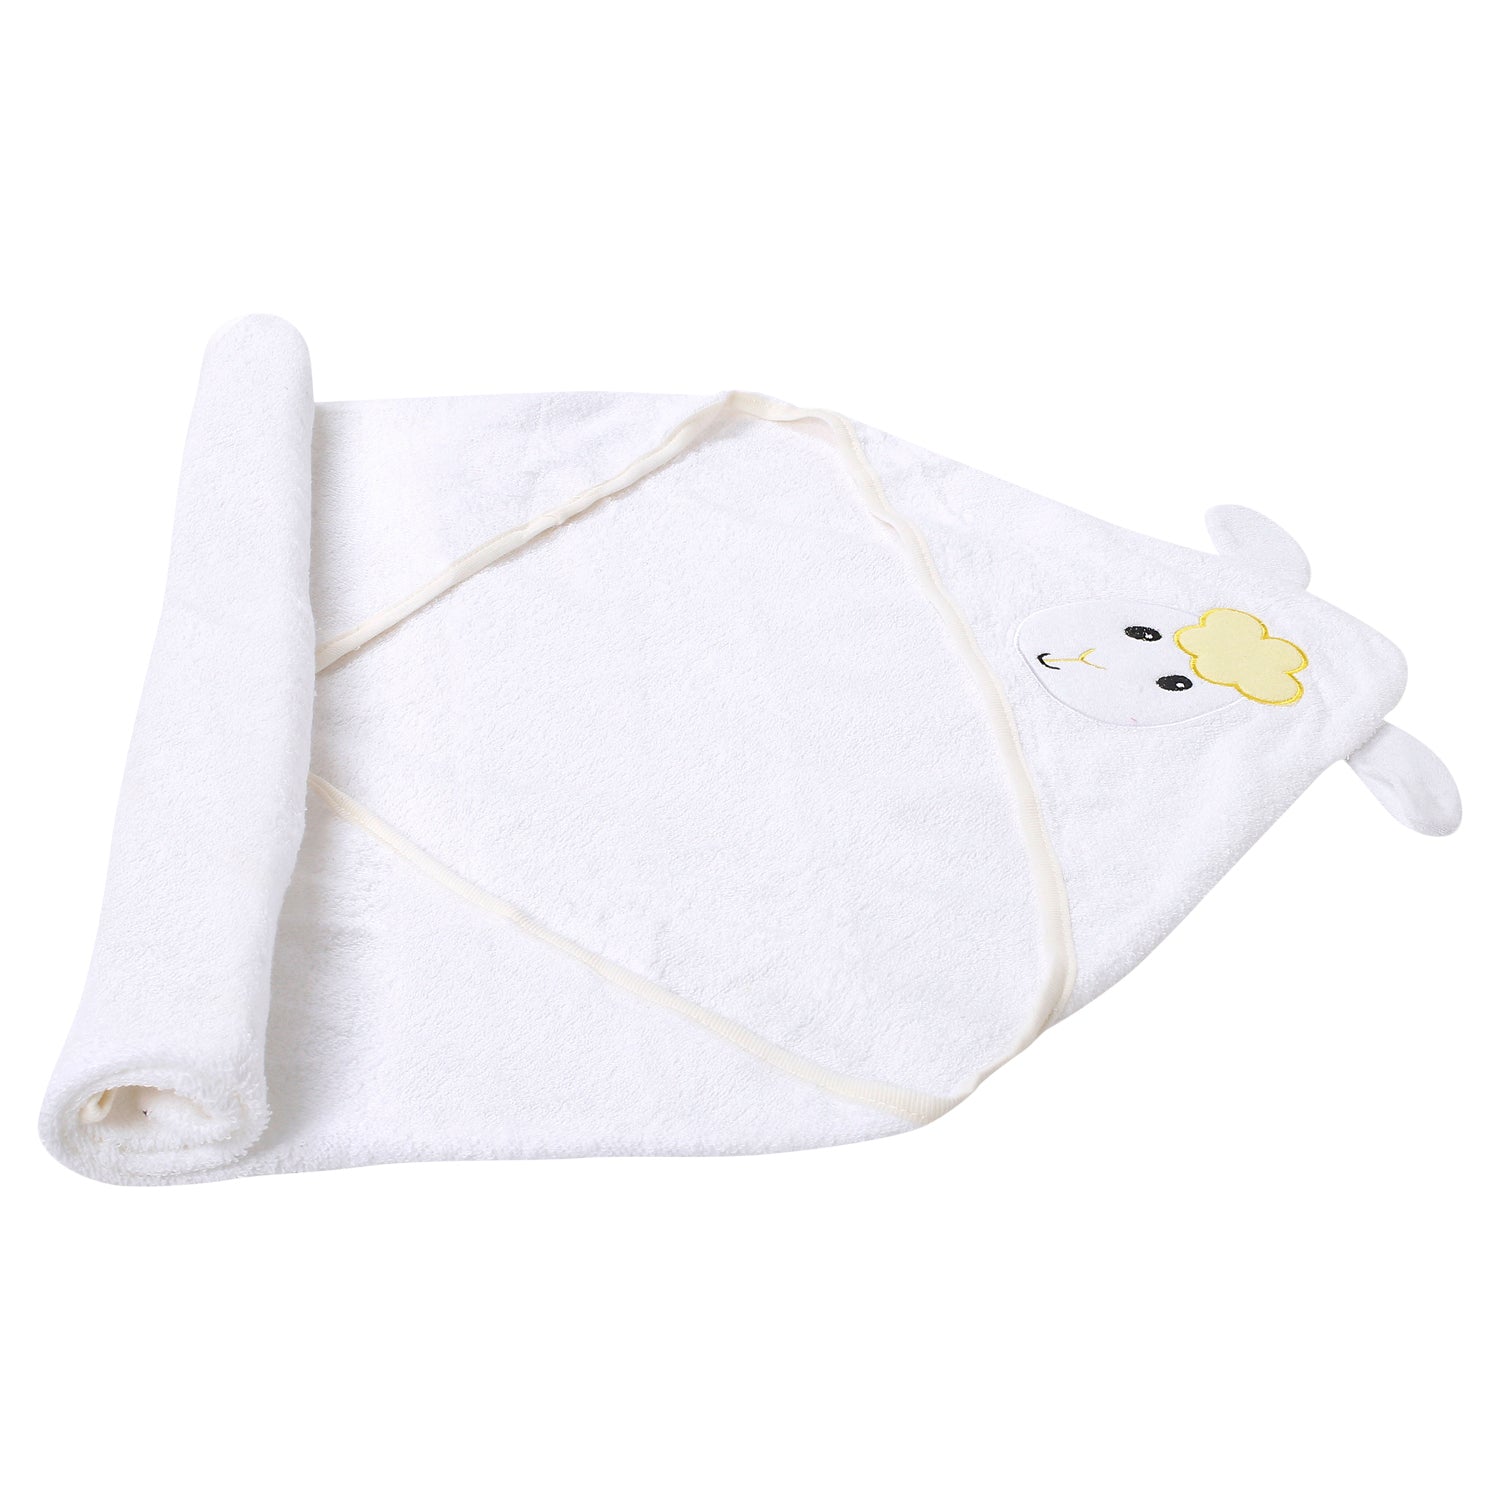 Goat White Hooded Towel